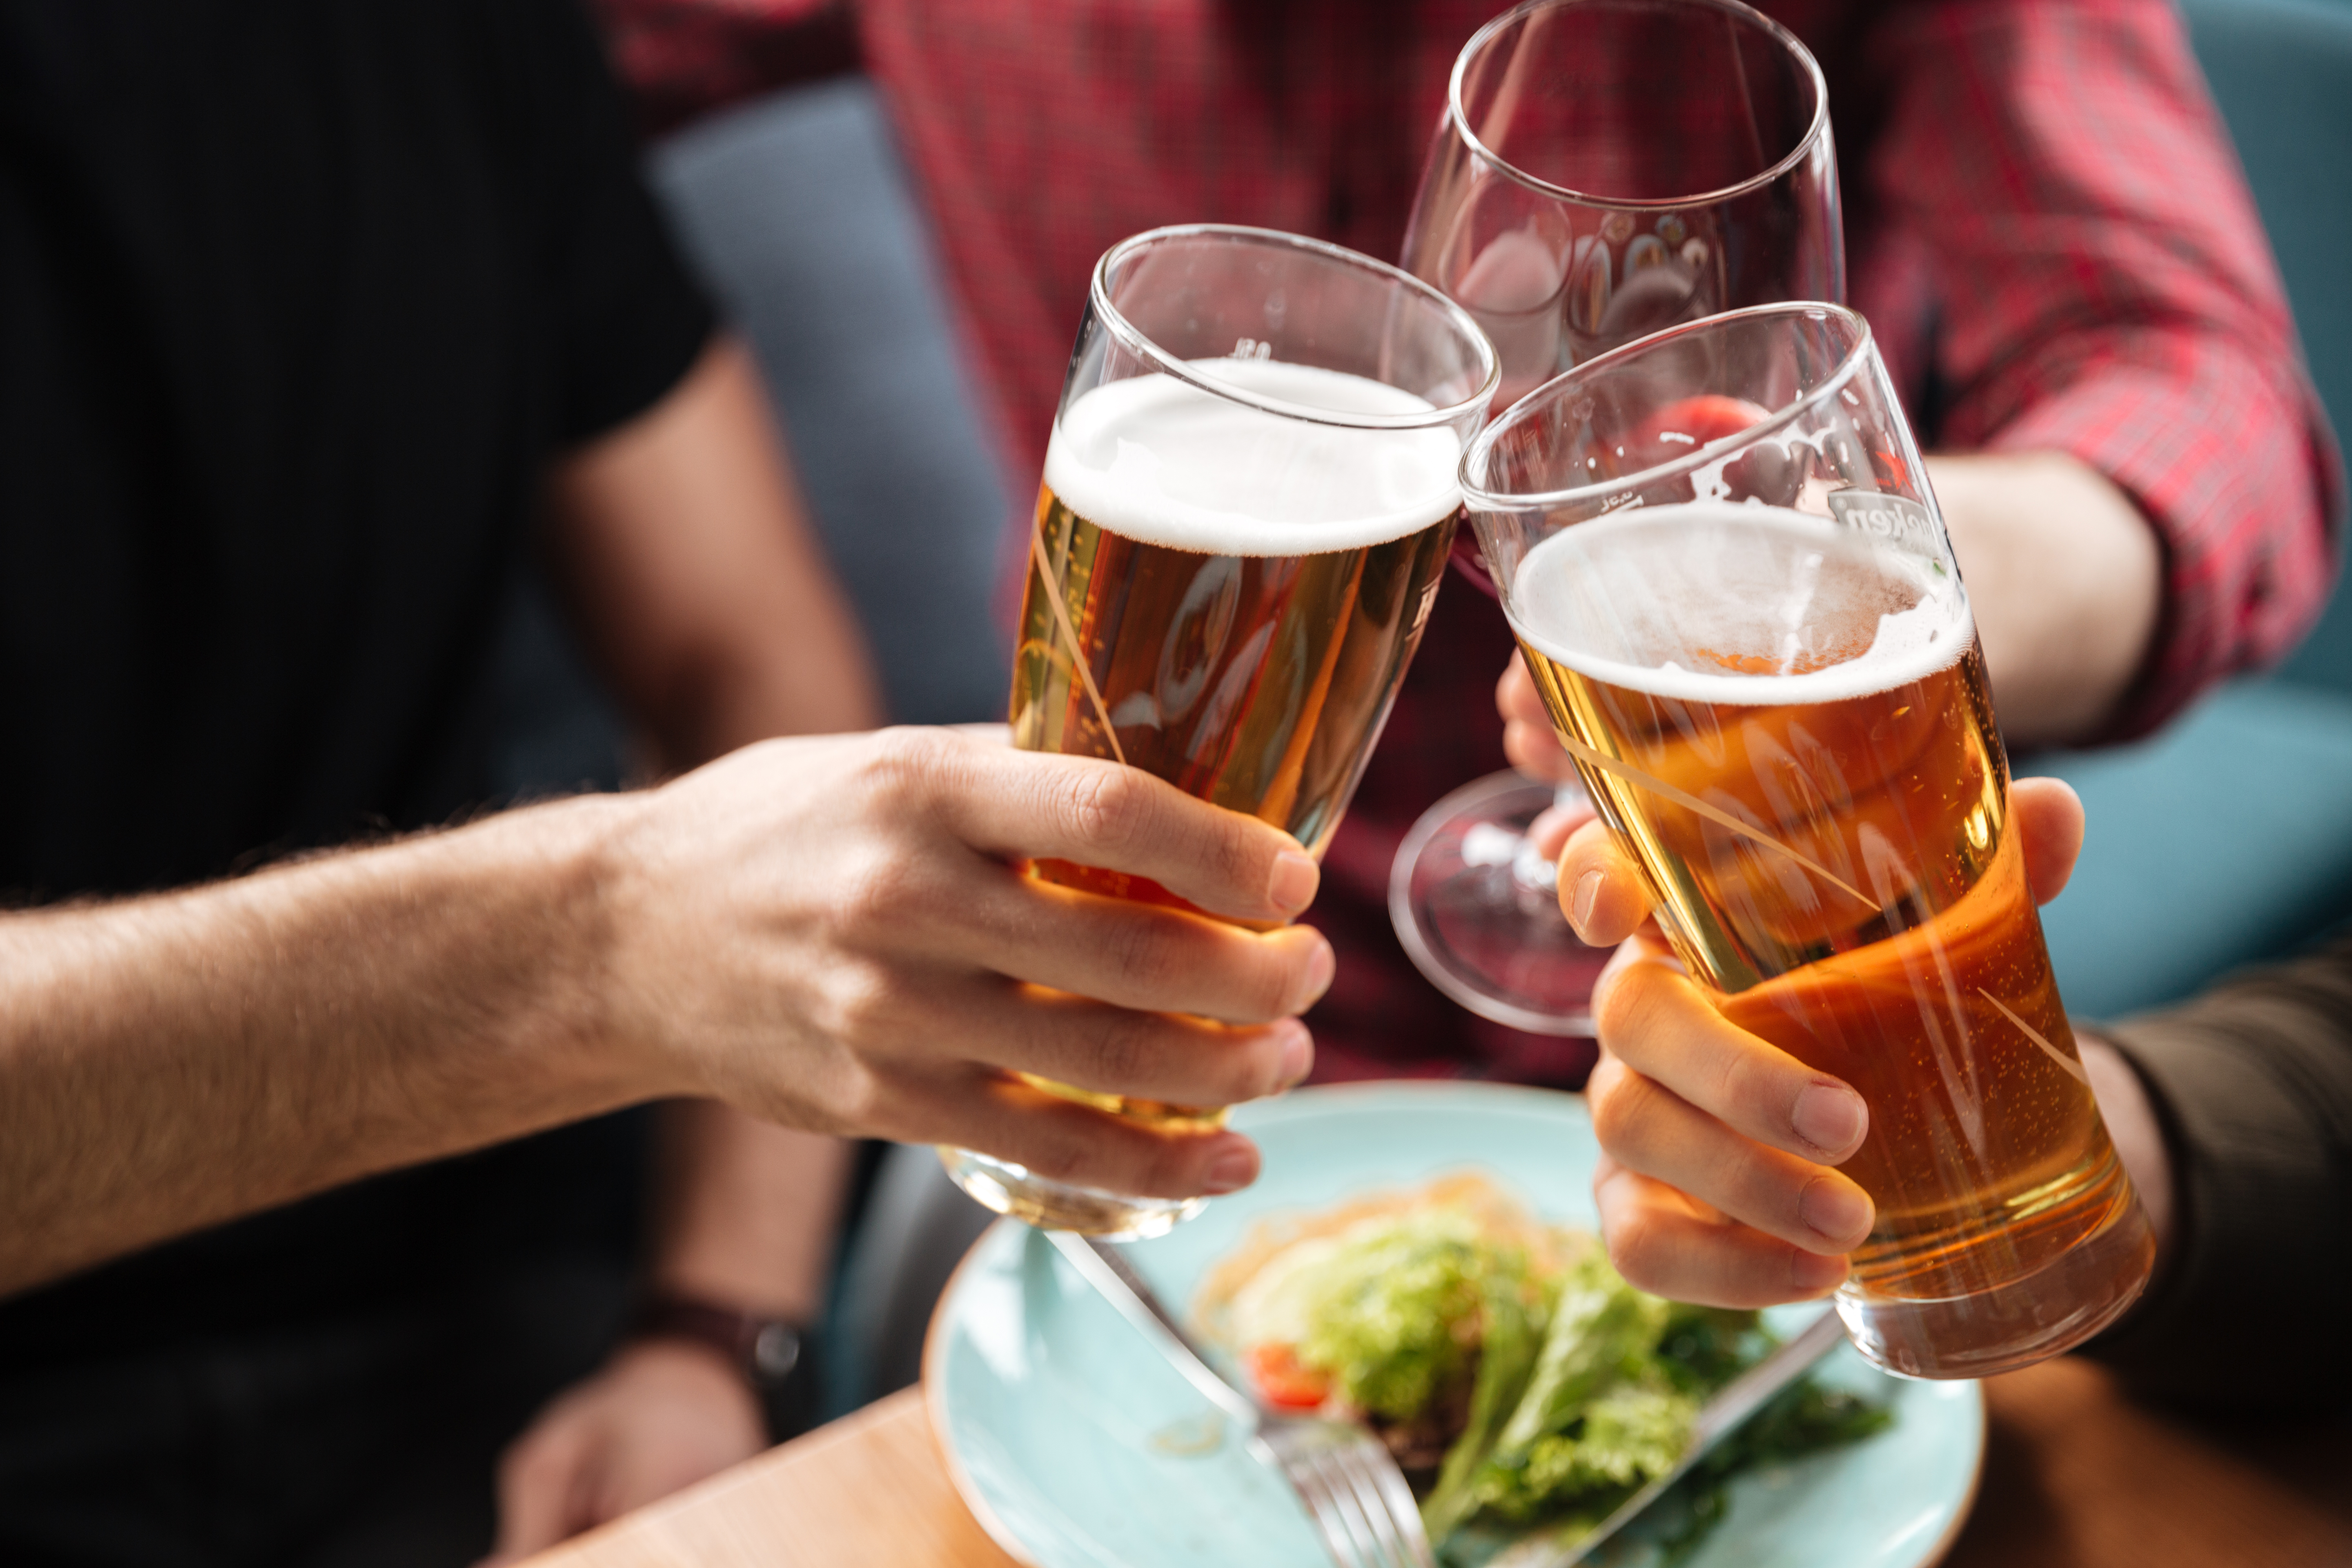 Hombres heterosexuales pueden sentirse atraídos por otros cuando toman alcohol, según estudio